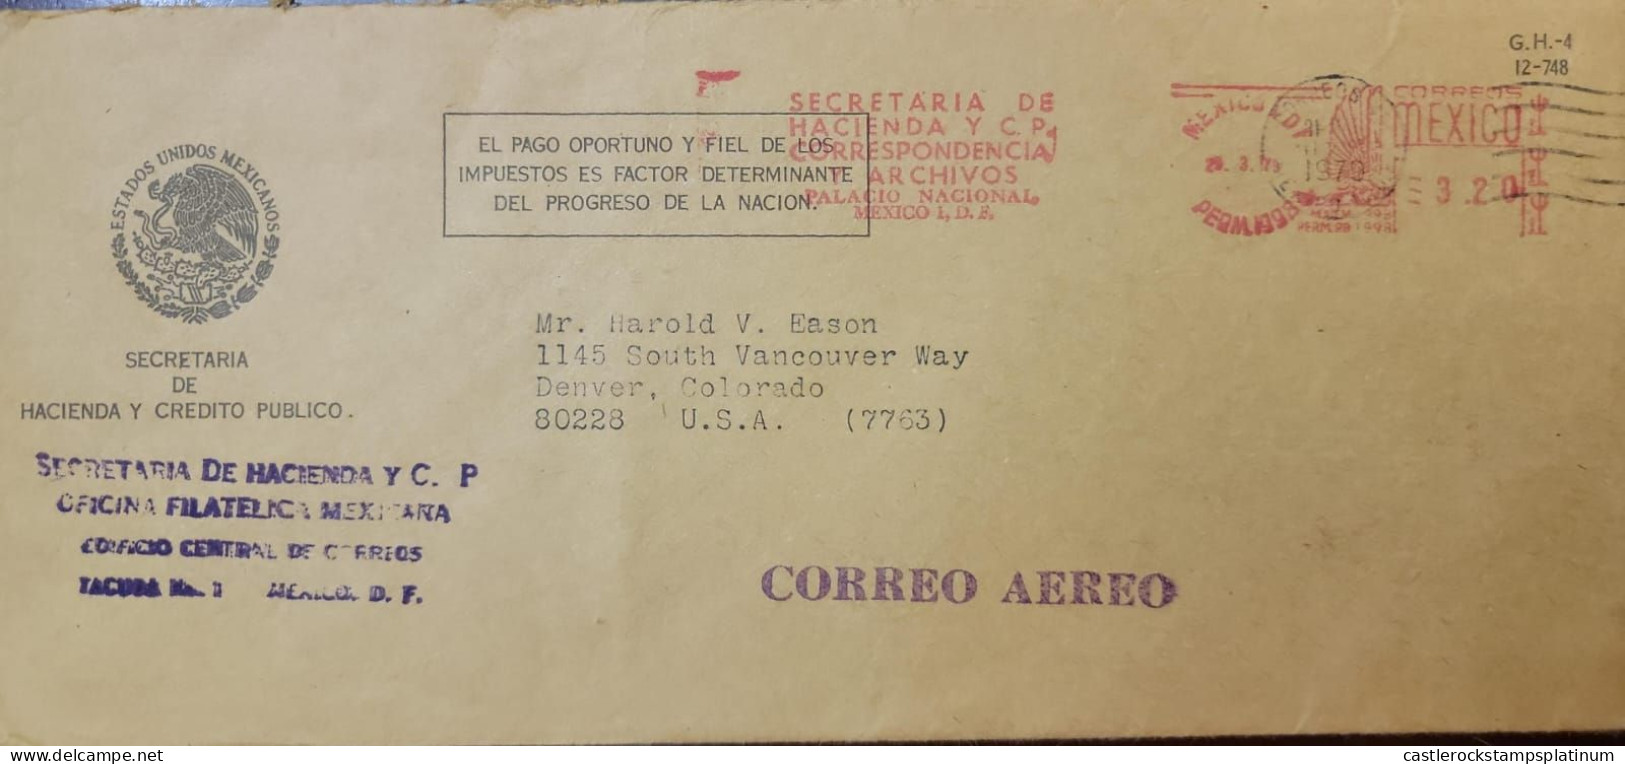 O) 1979 MEXICO, METERSTAMP, SECRETARIA DE HACIENDA Y C.P - ESTADOS UNIDOS MEXICANOS, CIRCULATED TO USA - Mexiko